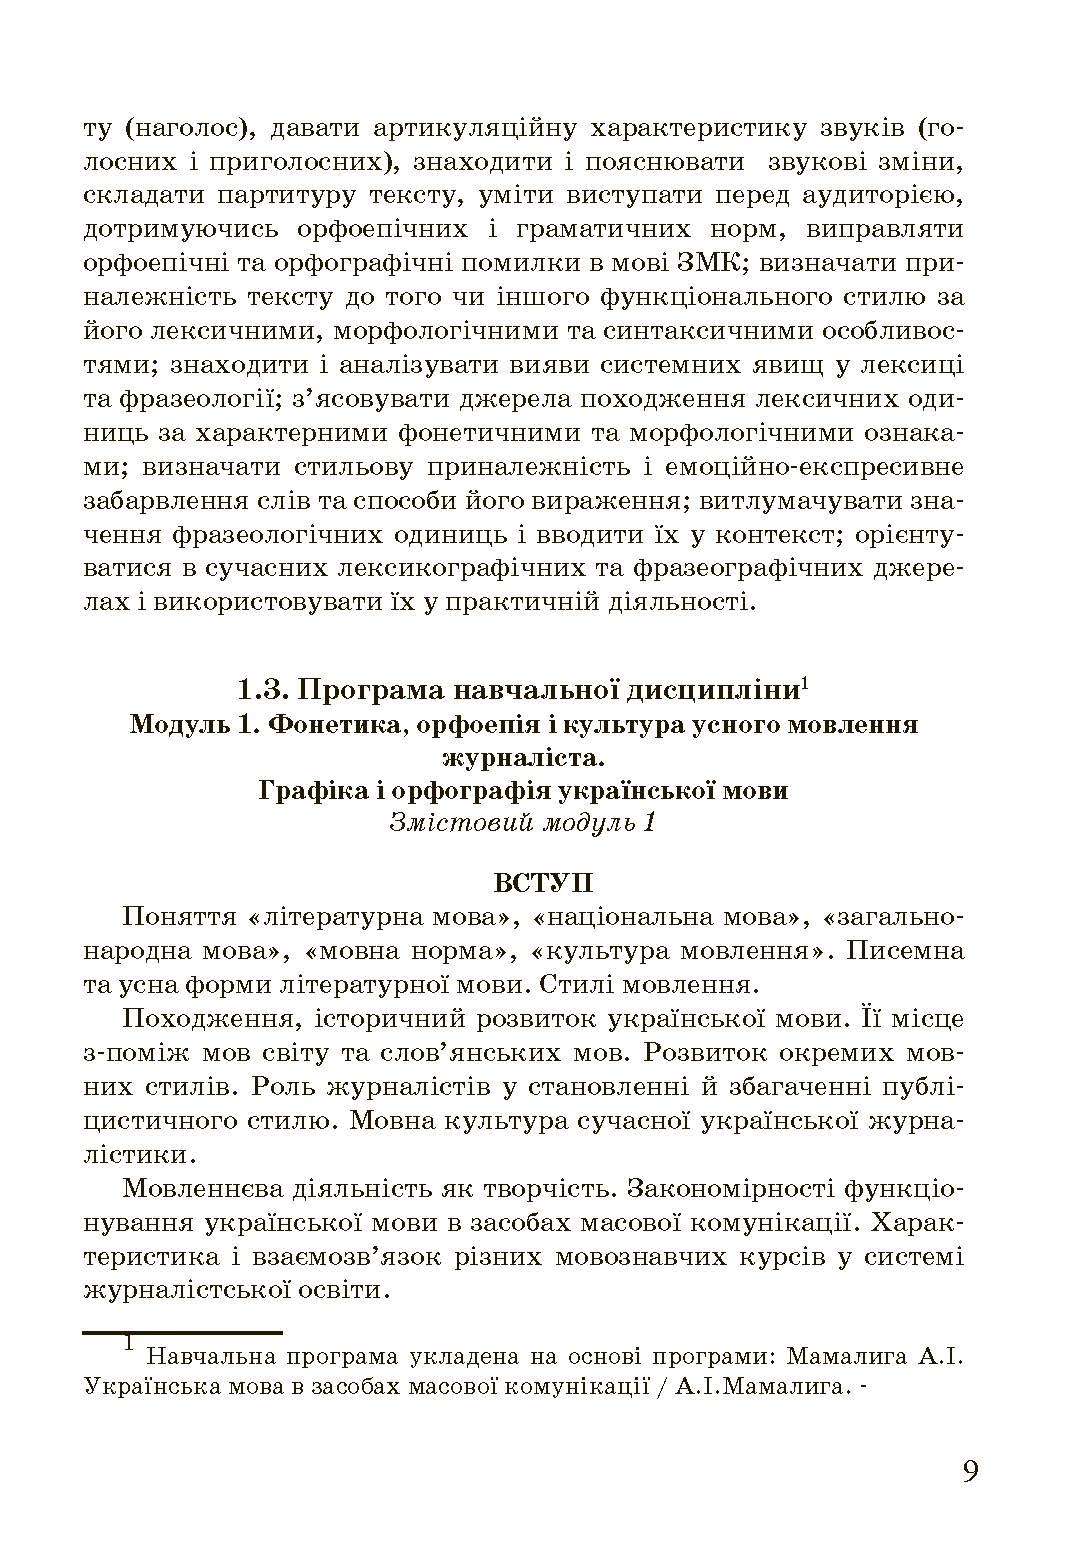 Українська мова в засобах масової комунікації  (2020 год). Автор — Попович А.С.. 